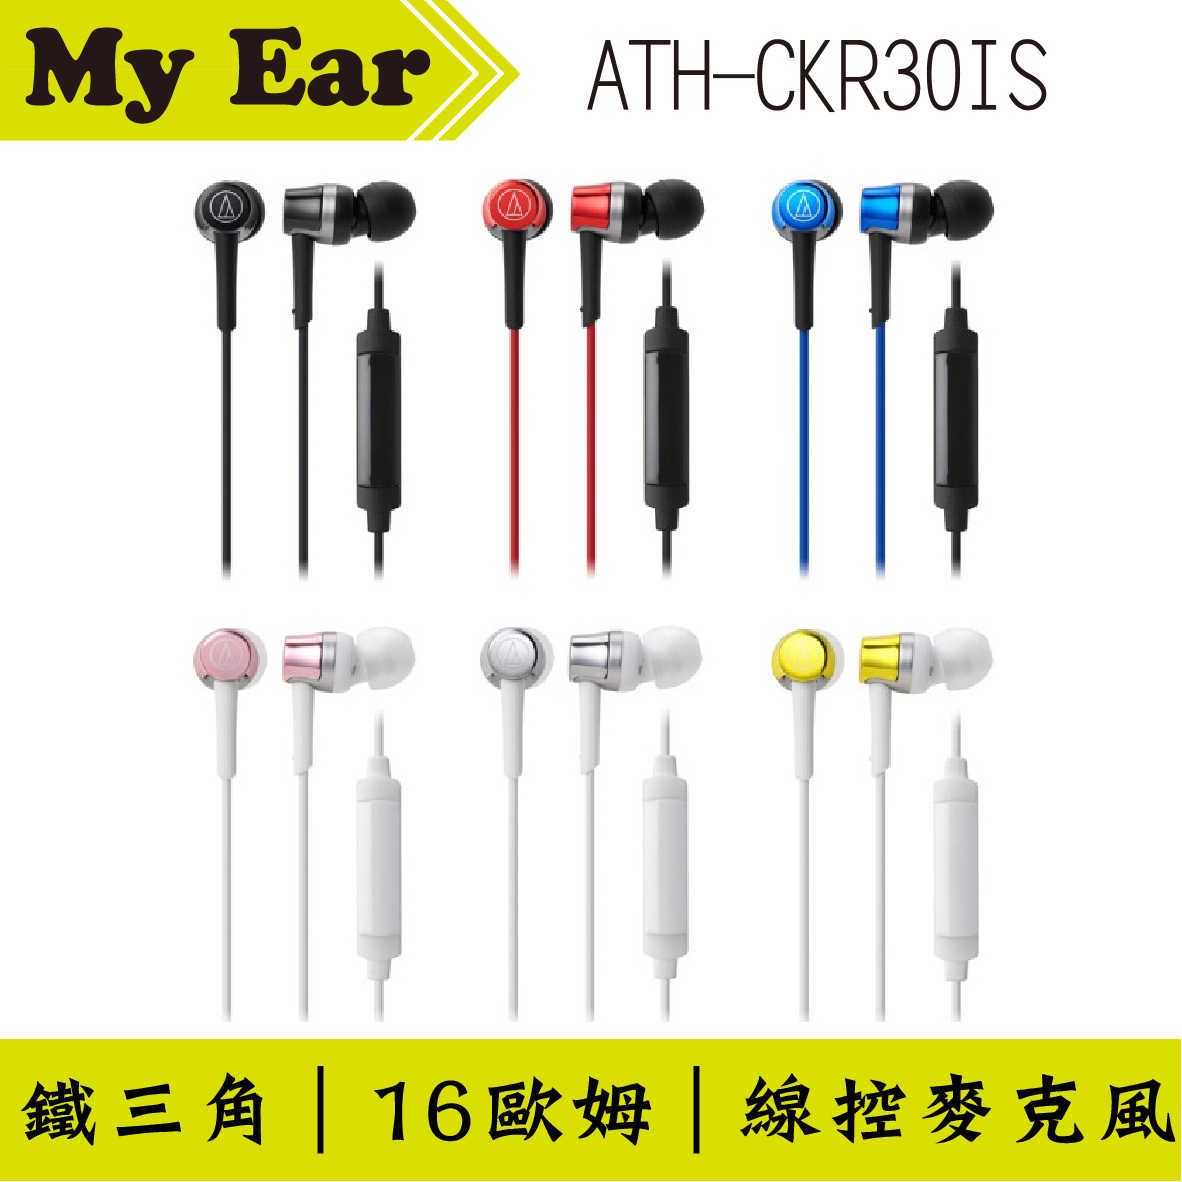 鐵三角 ATH-CKR30is 多色可選 線控耳道式耳機 | My Ear 耳機專門店